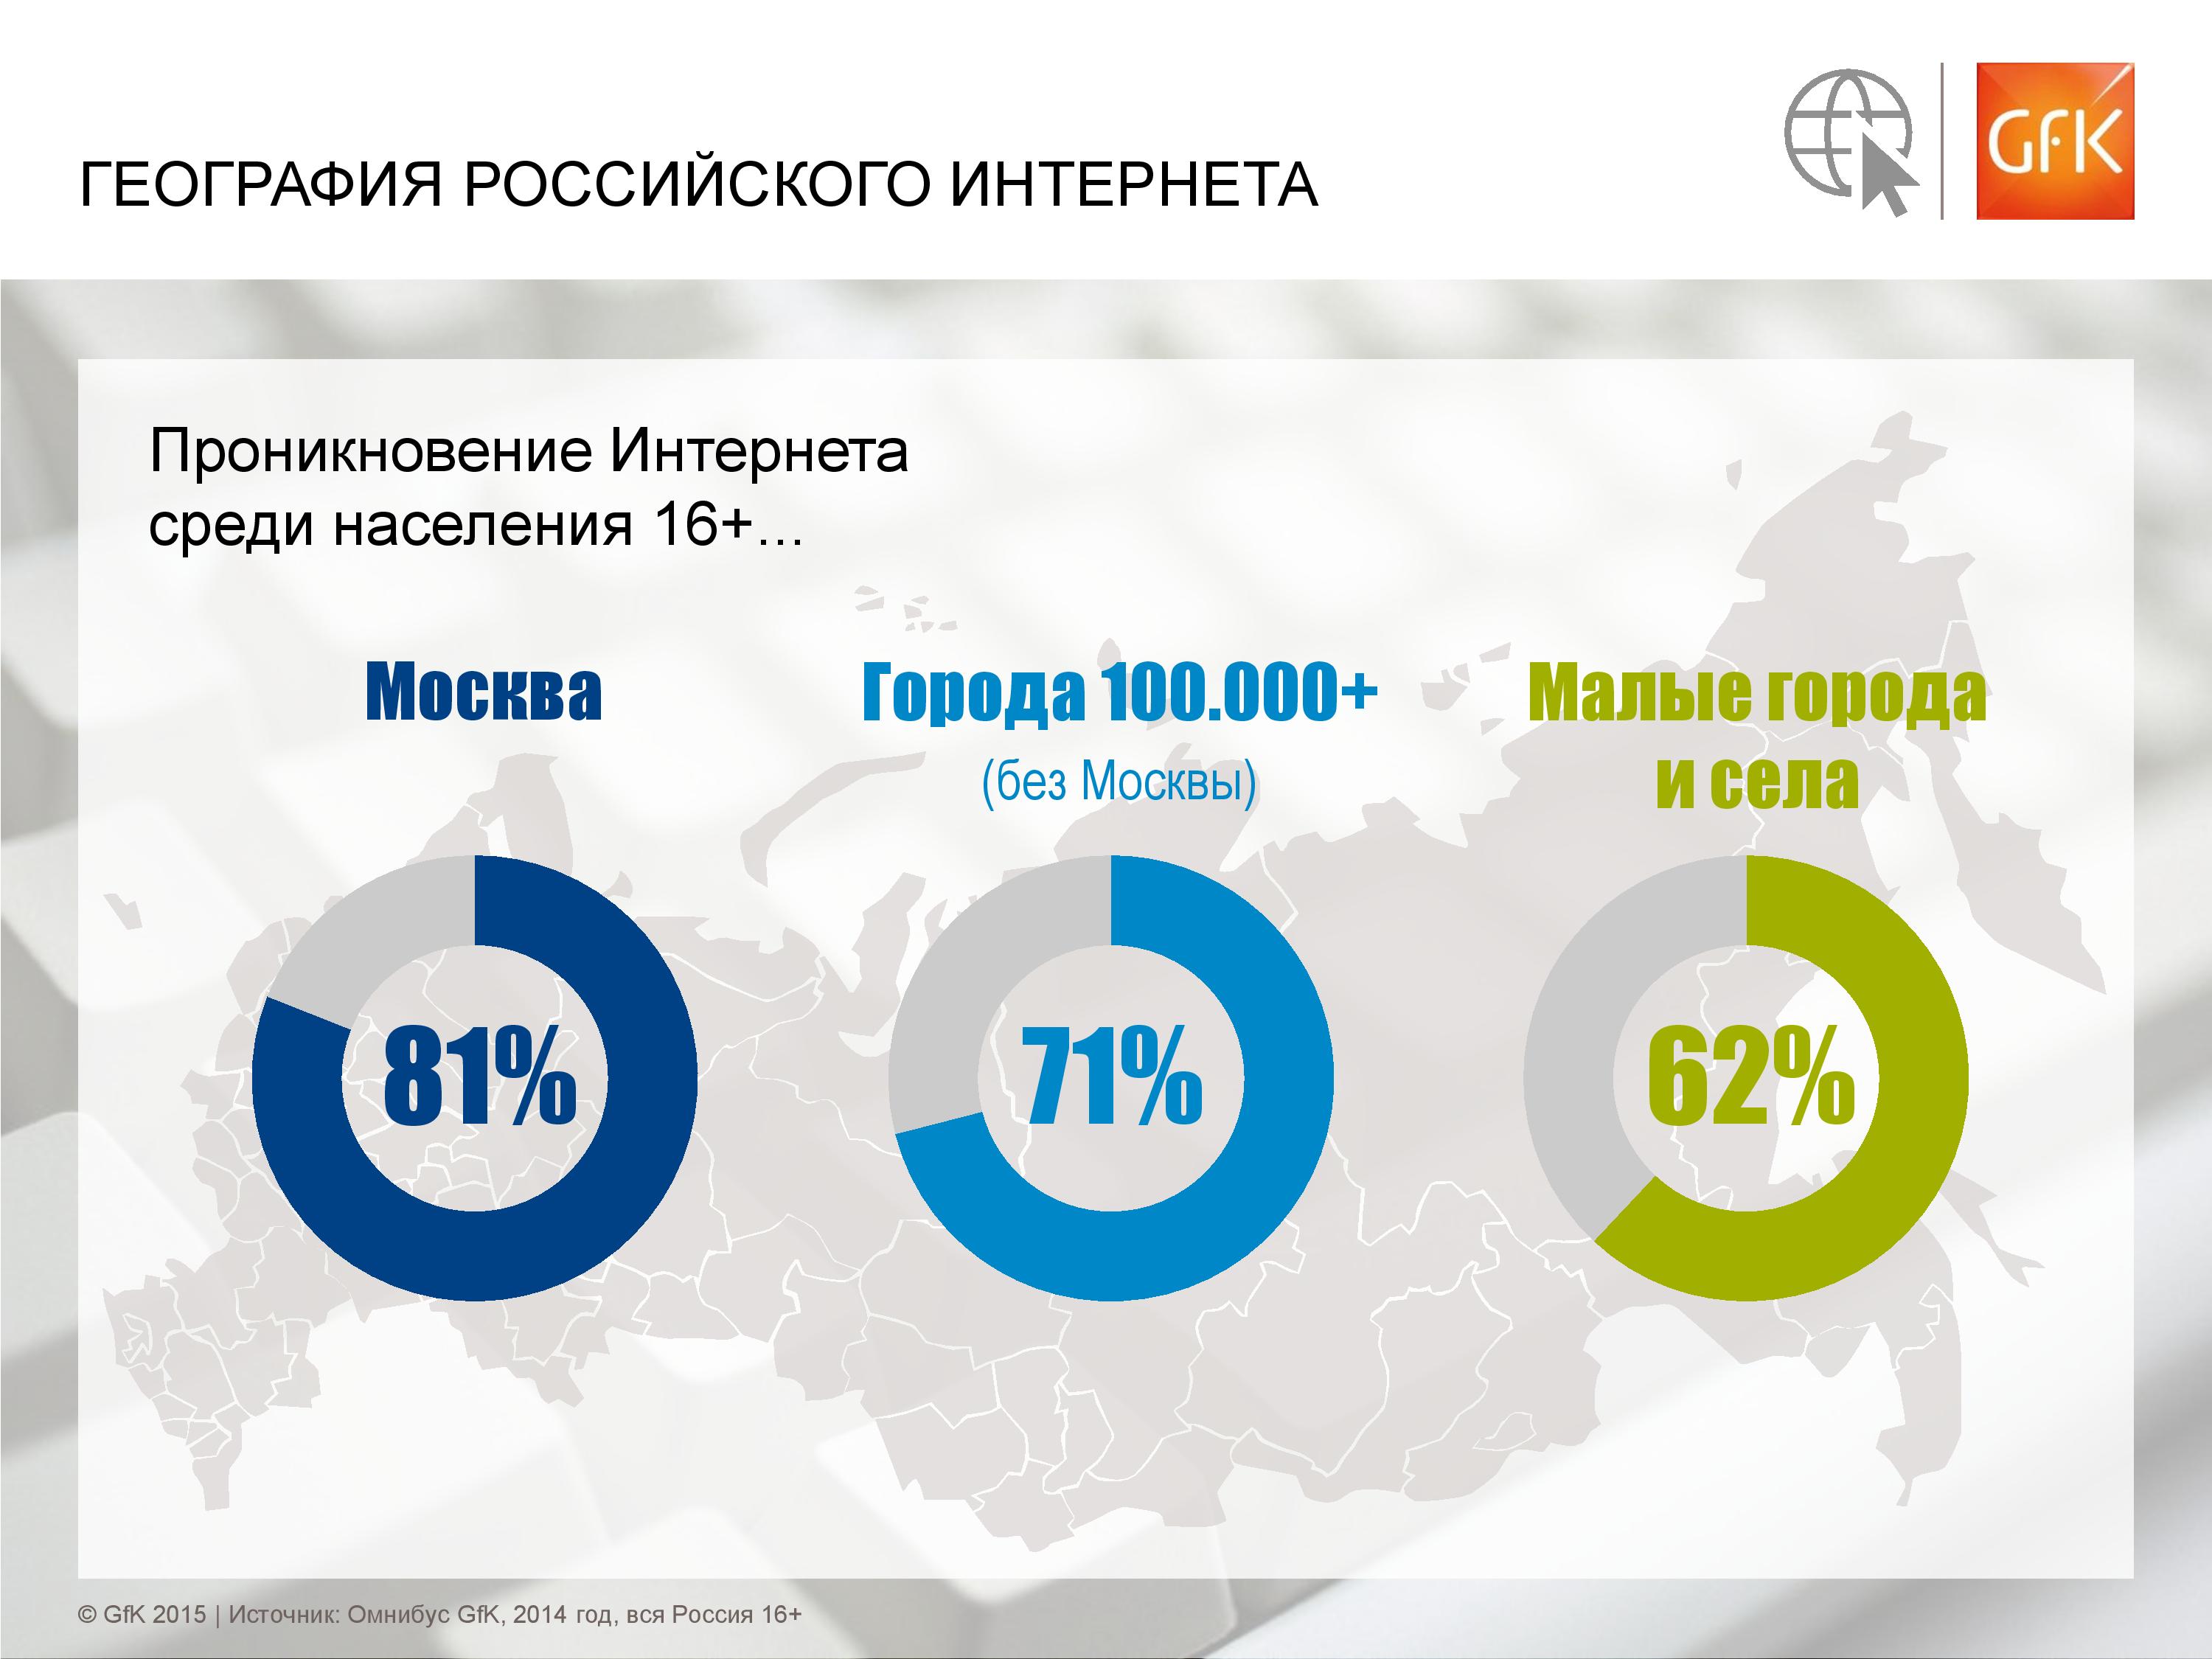 Сколько пользователей в россии. Рост пользователей интернета. Российская аудитория интернета. Интернет в России статистика. График пользования интернетом в России.